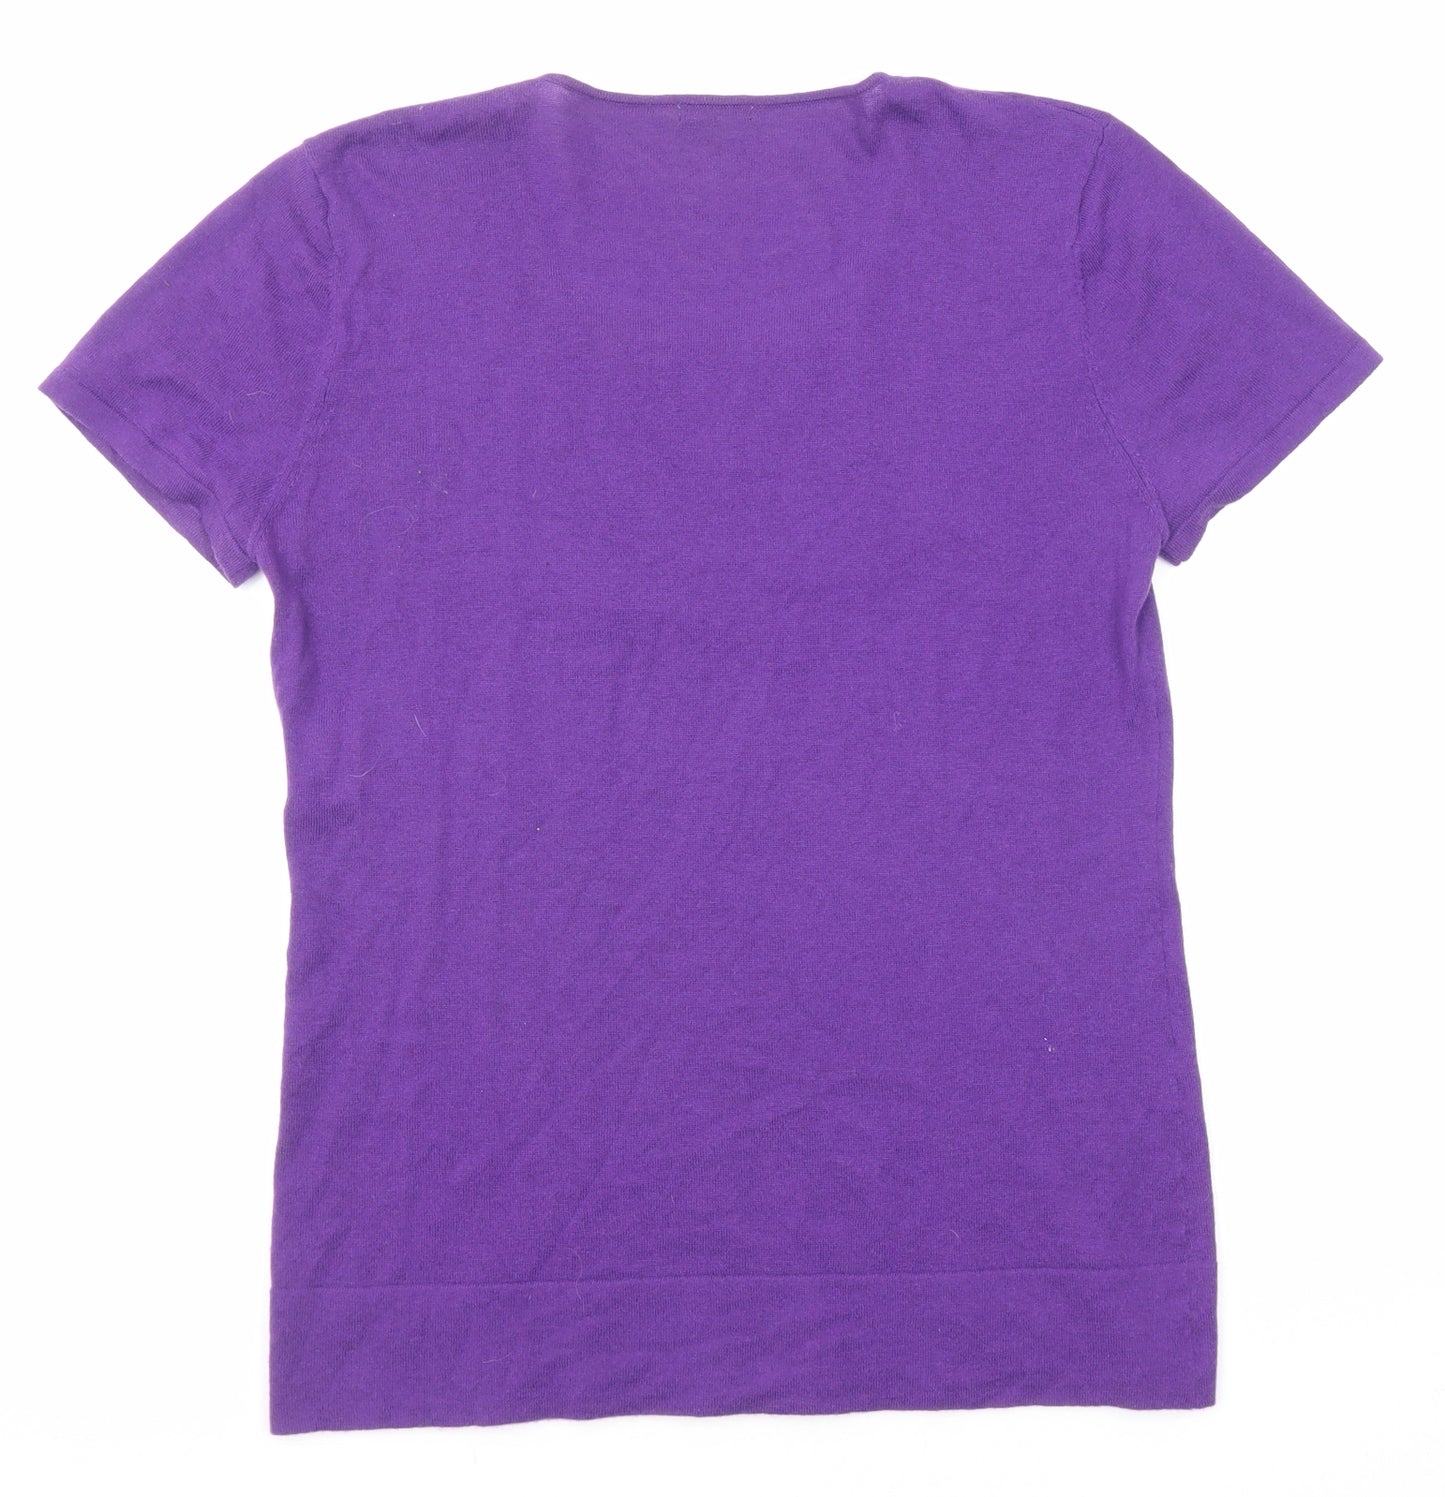 Caroline Biss Womens Purple Round Neck Cotton Pullover Jumper Size 14